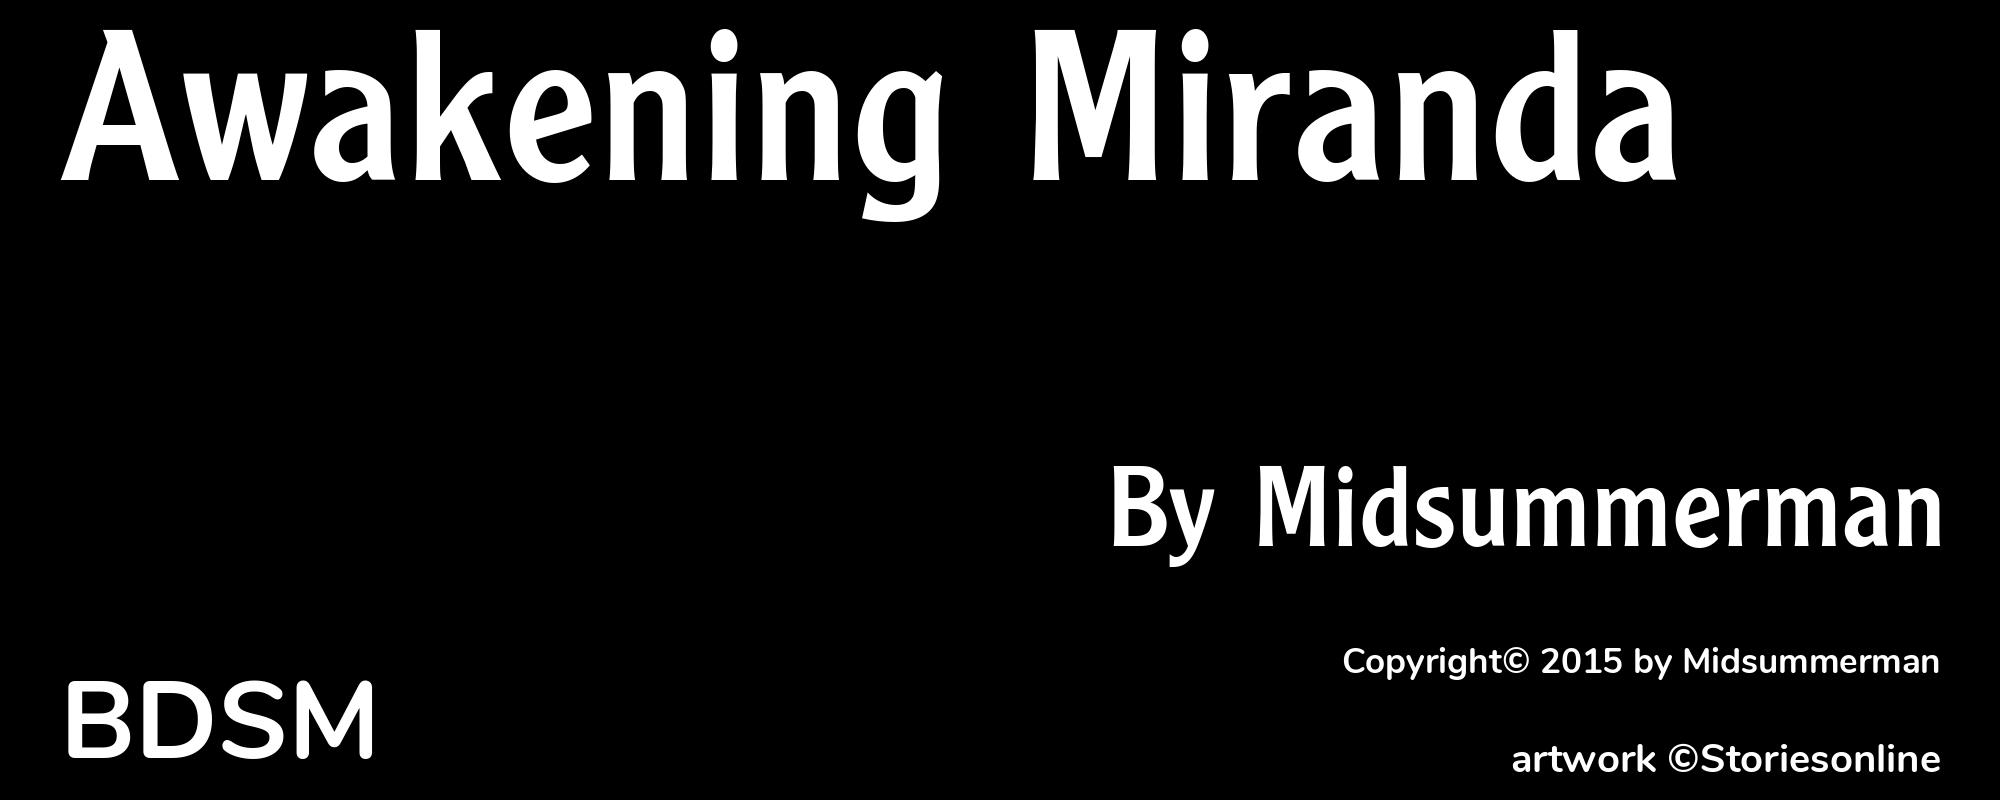 Awakening Miranda - Cover